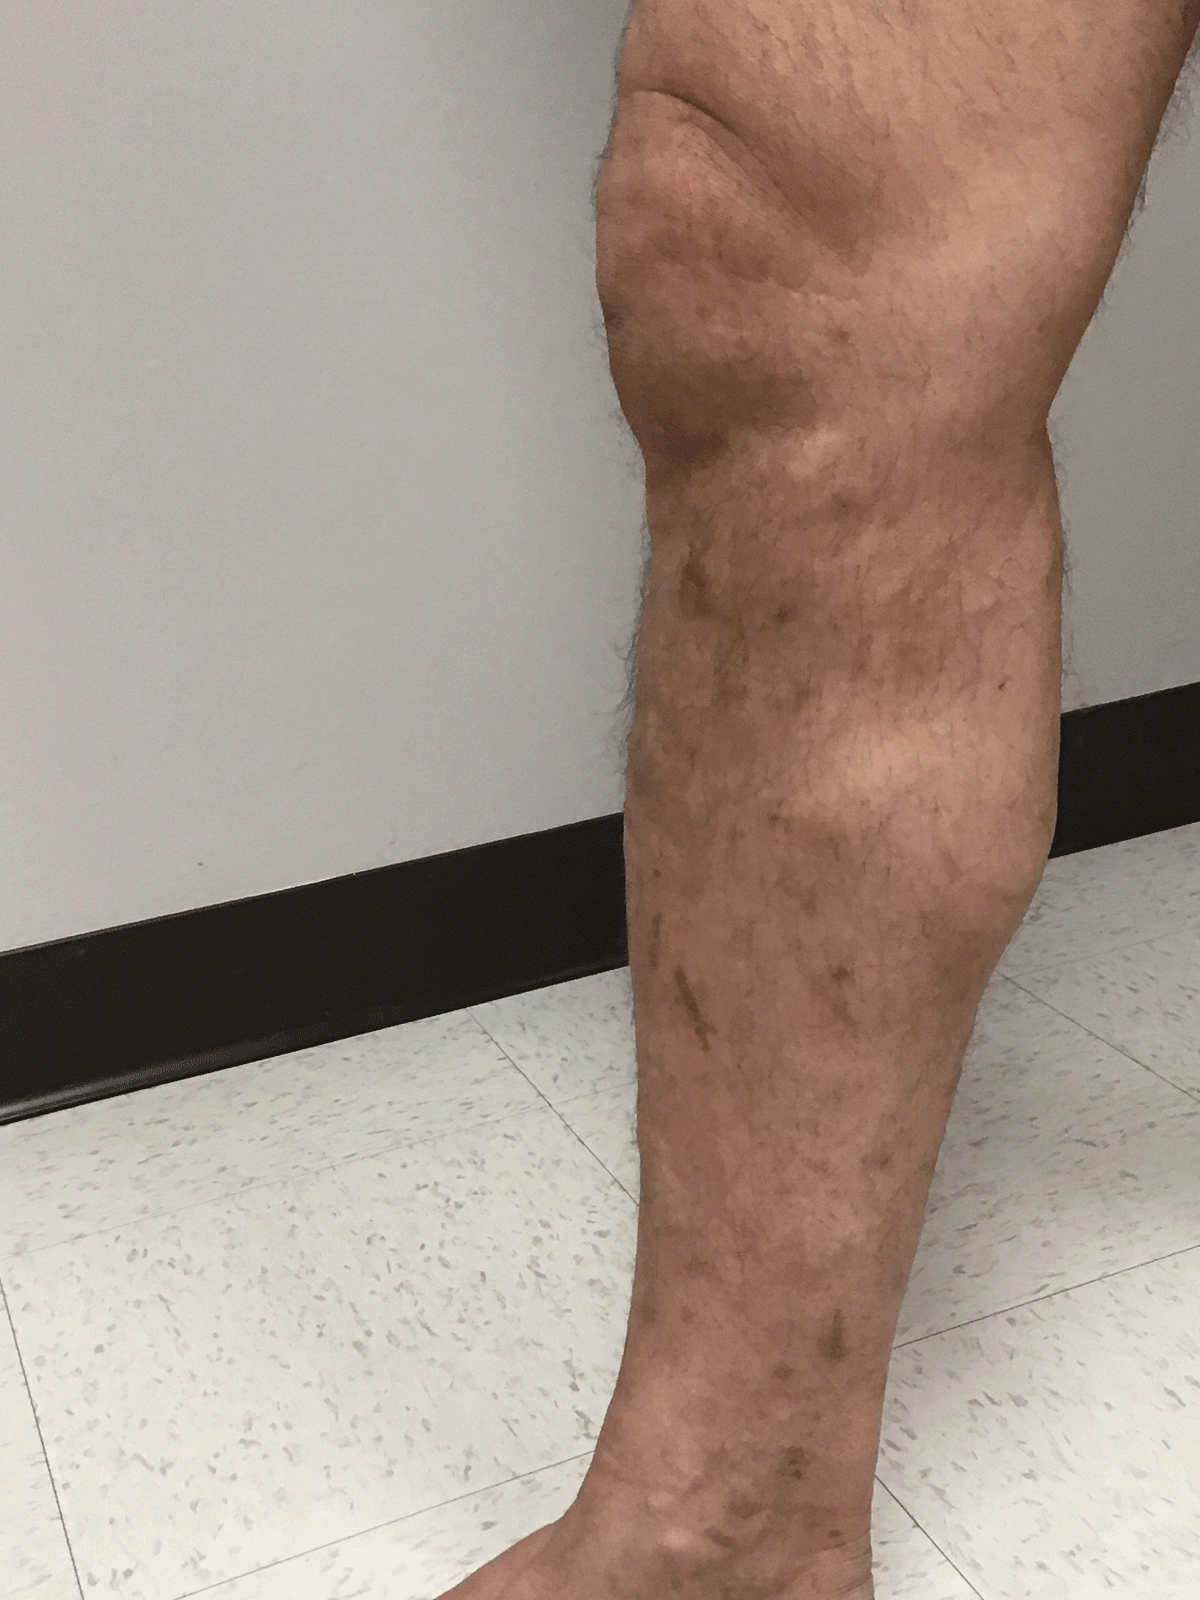 Leg after vein treatment